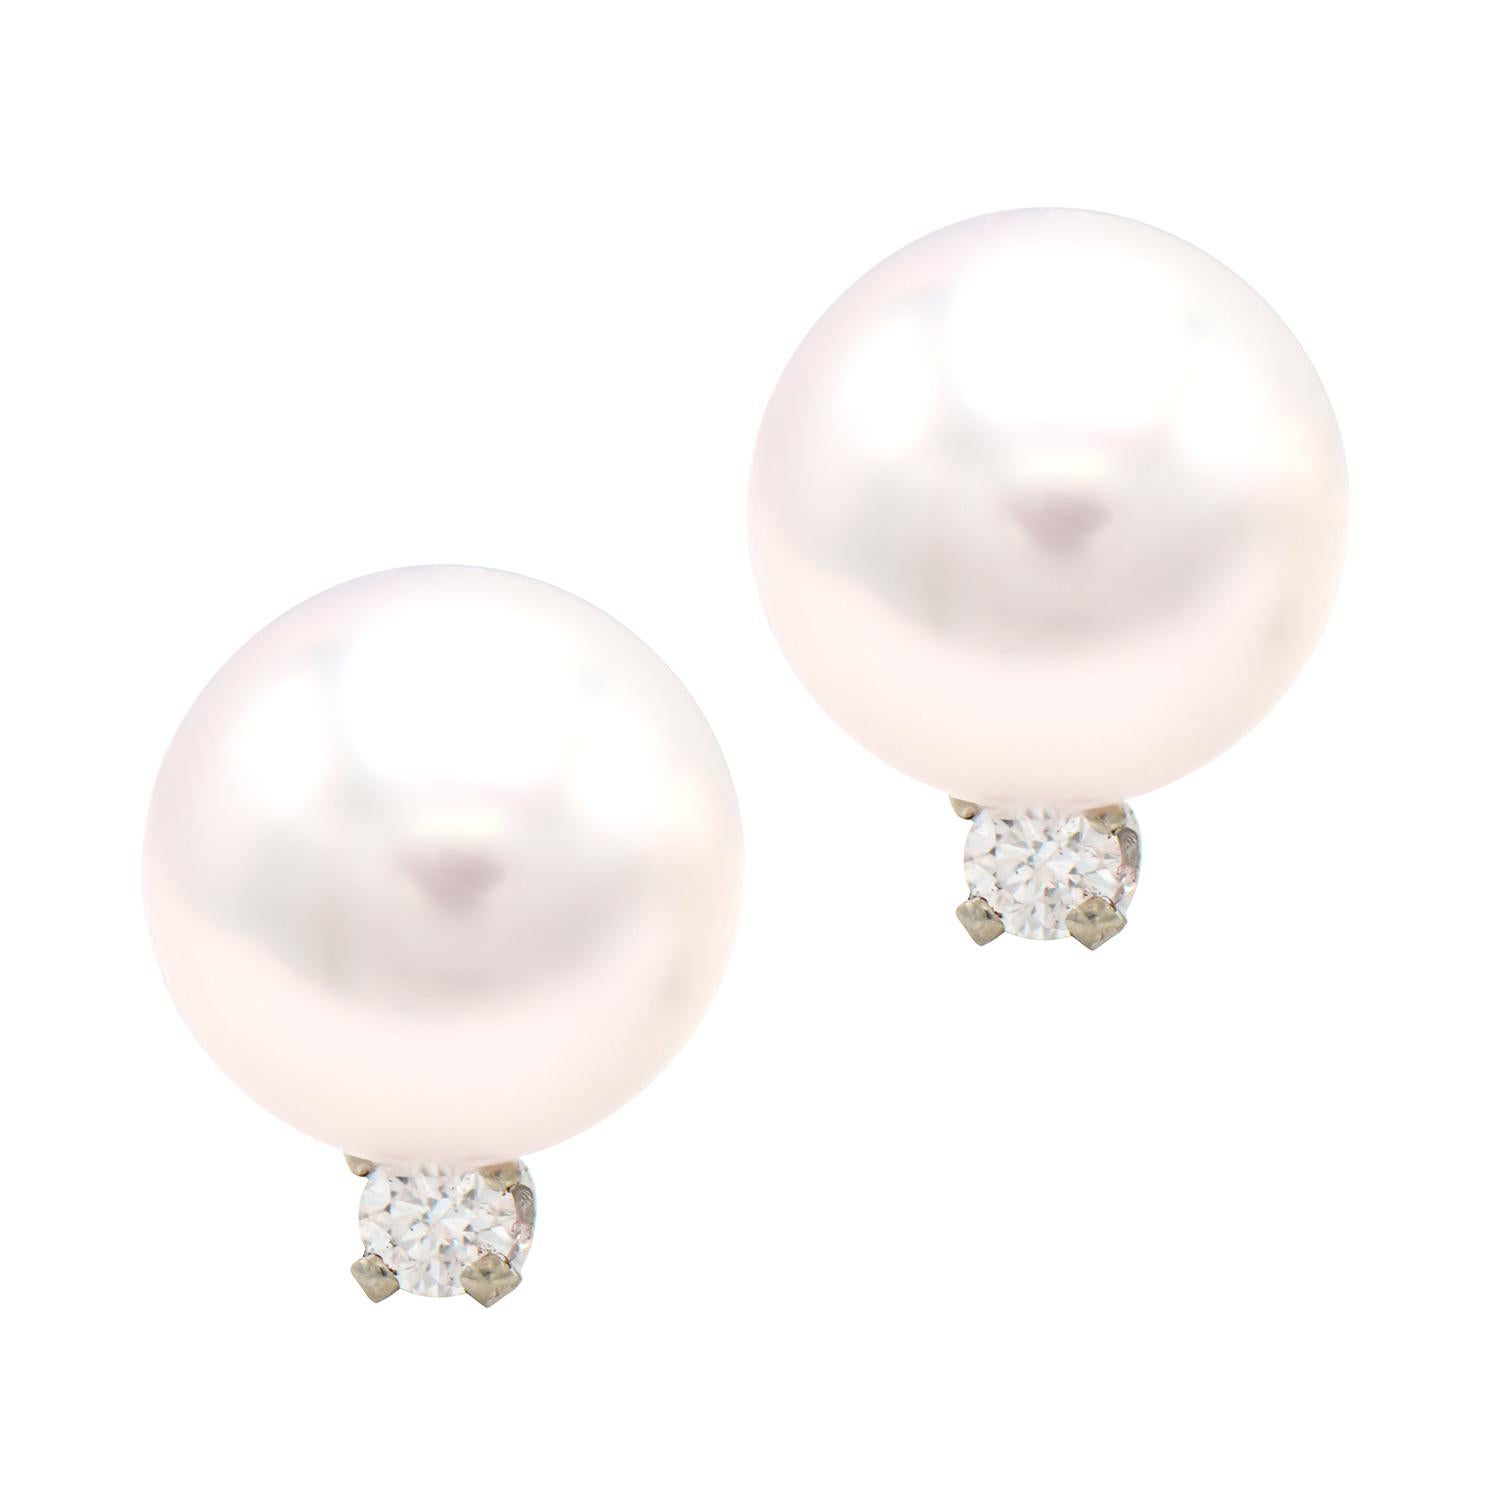 7mm pearl stud earrings